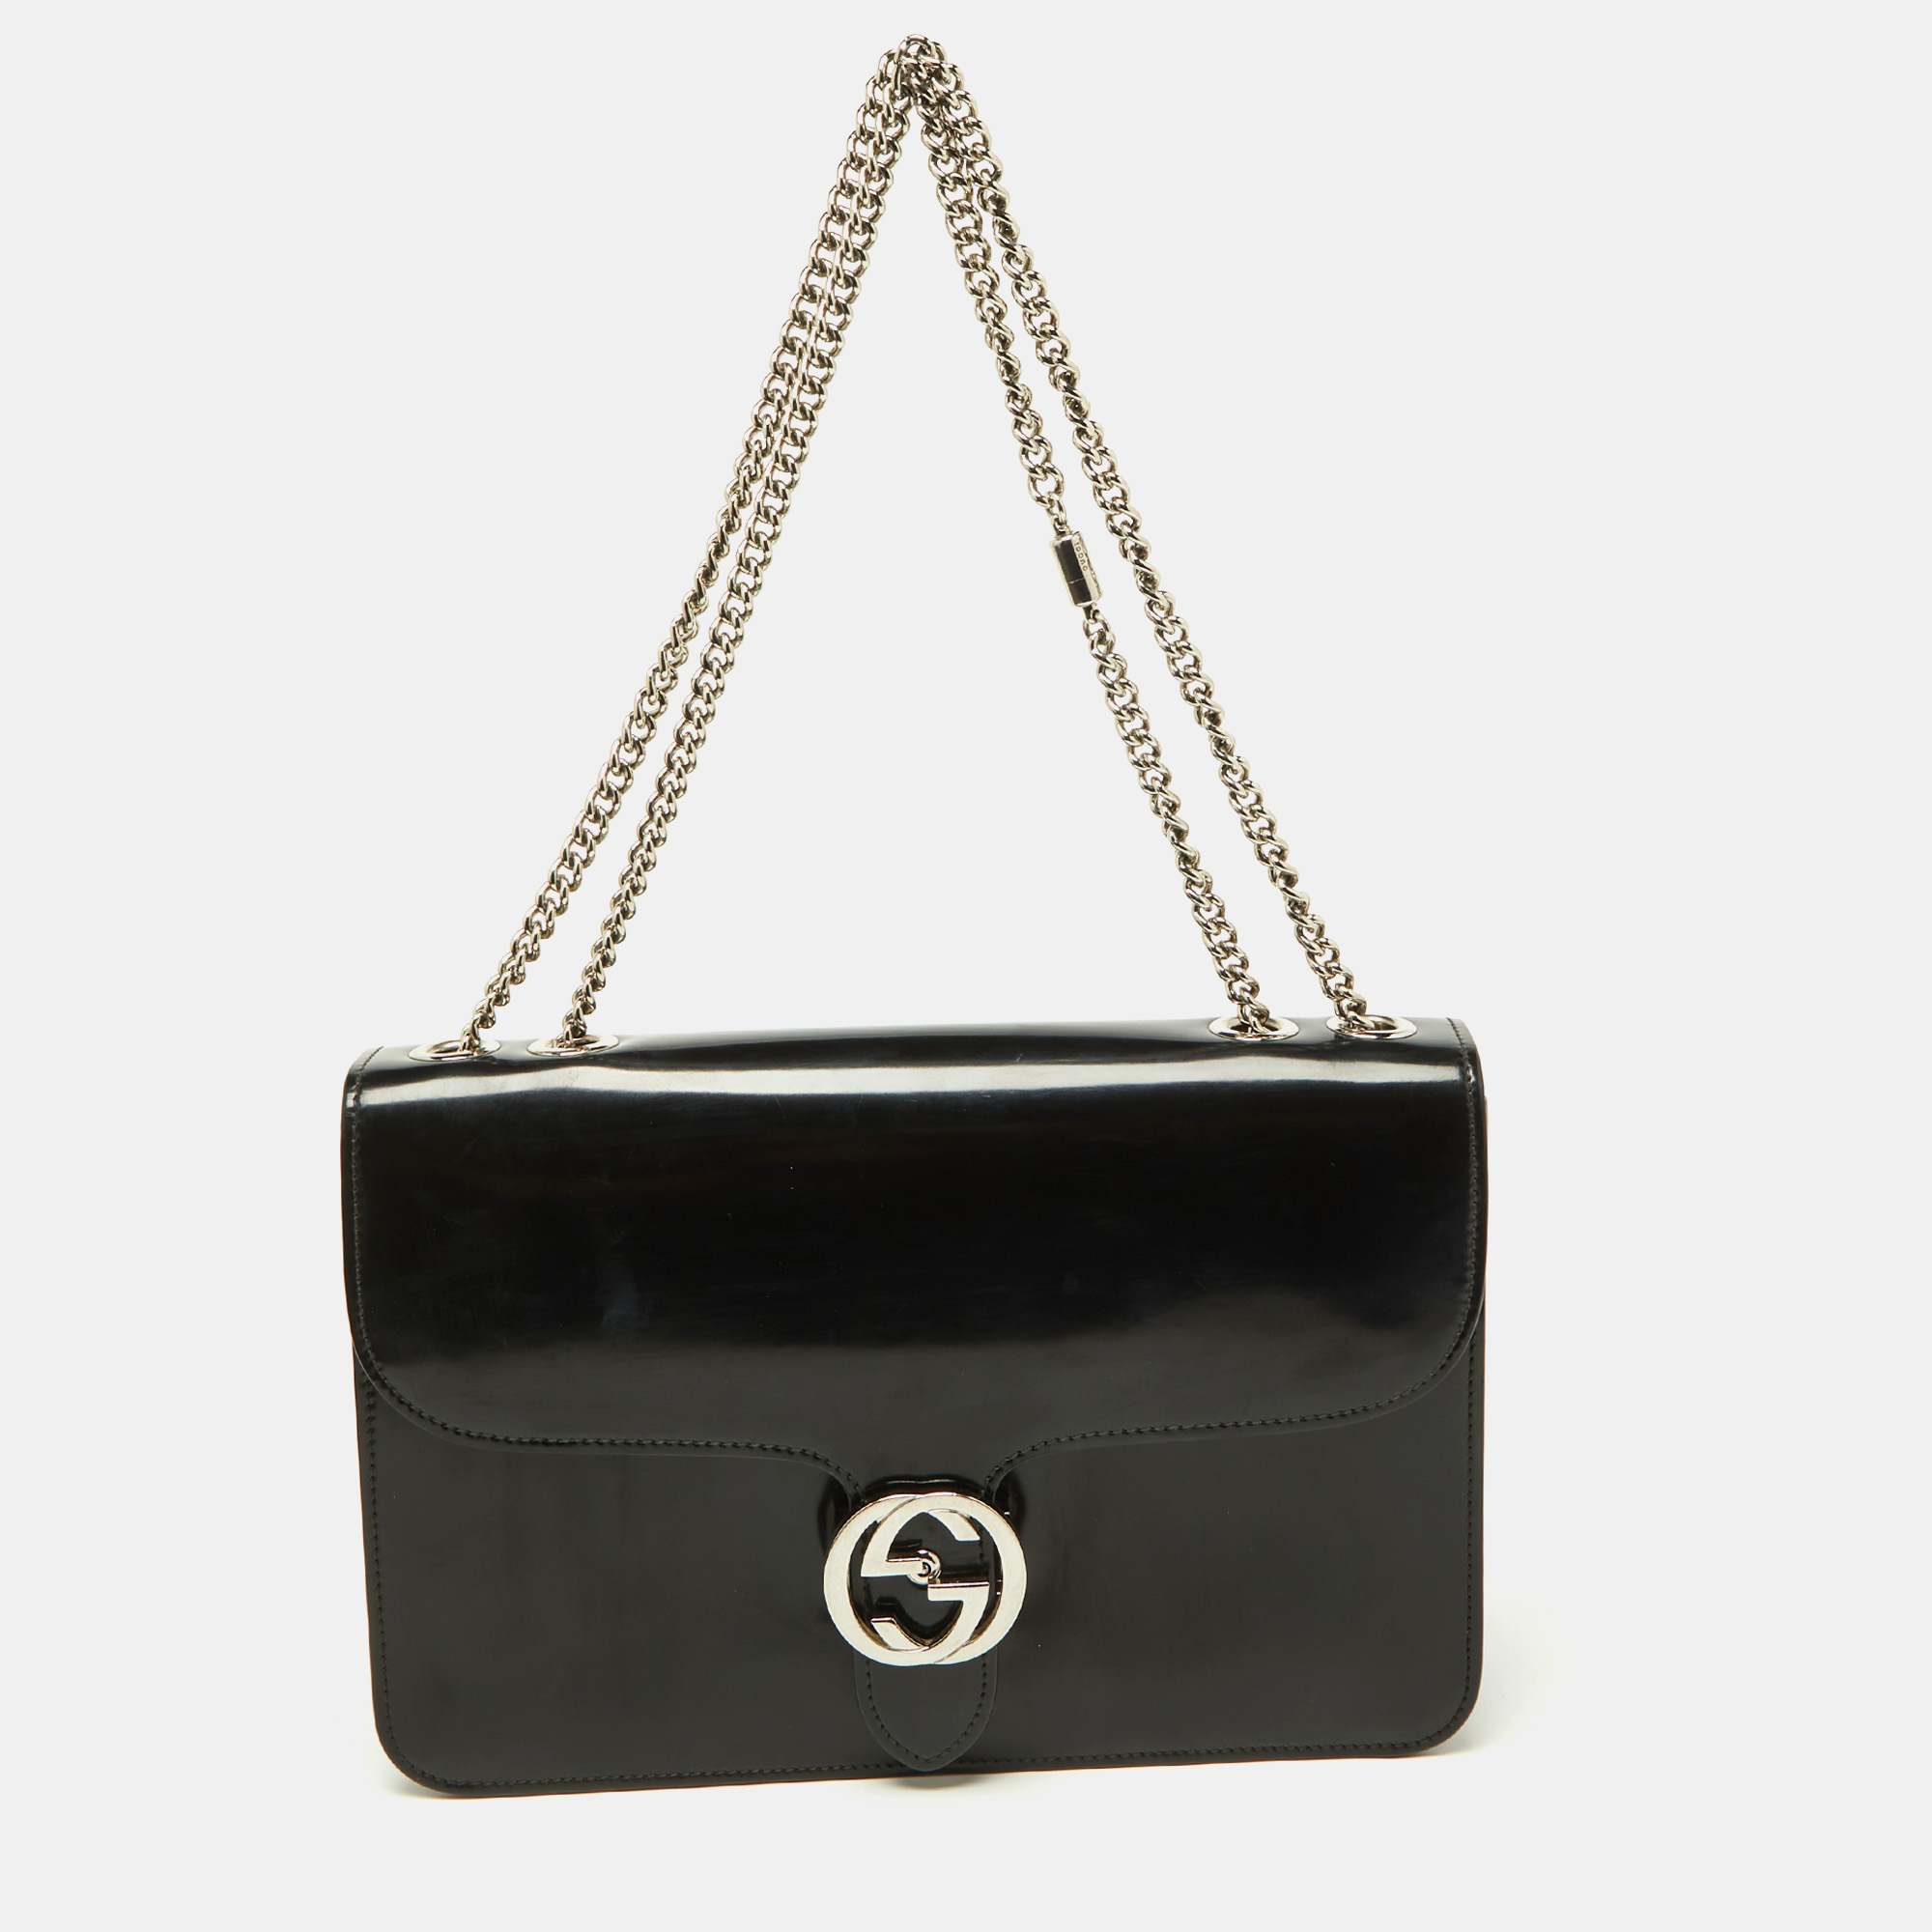 Pre-owned Gucci Black Leather Medium Interlocking G Shoulder Bag